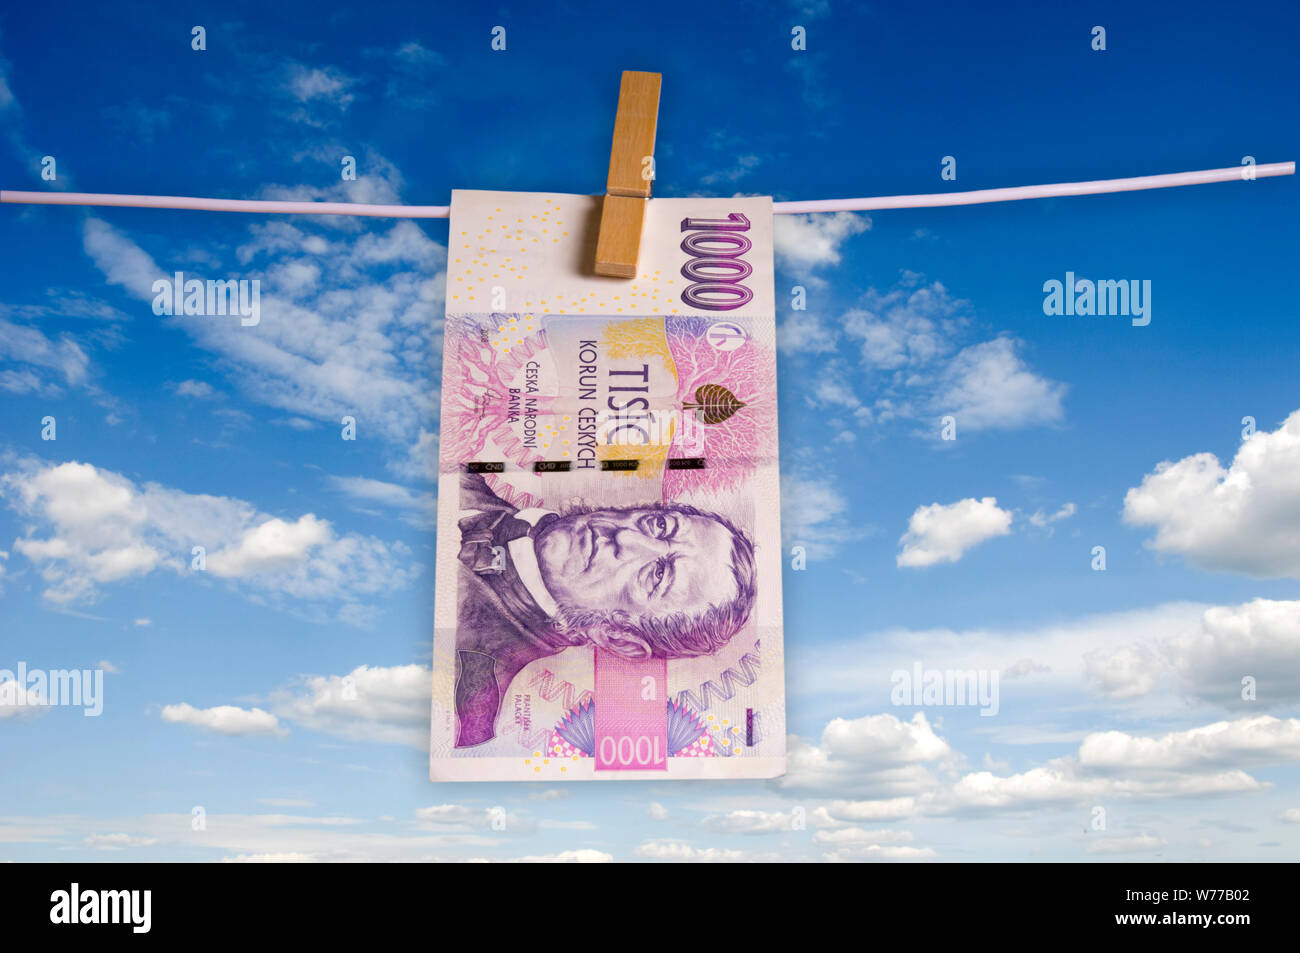 1000 Tschechische Krone Banknote hängend an einem Seil - recycling Geld-, Banken- und Wirtschaft Konzept Stockfoto